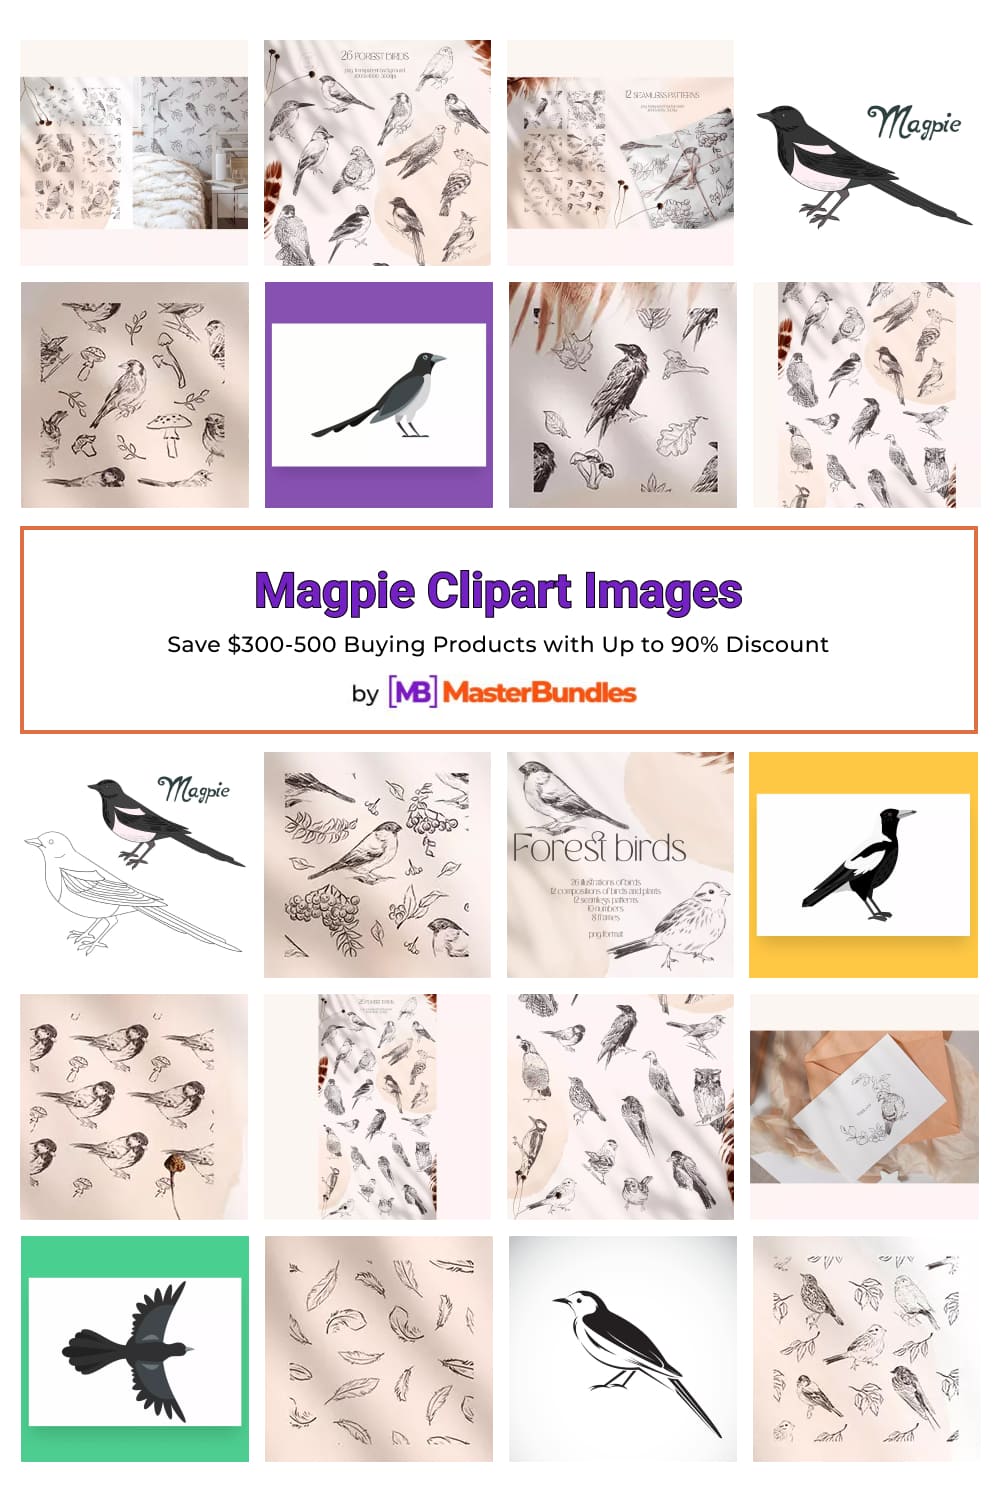 Magpie Clipart Images Pinterest.